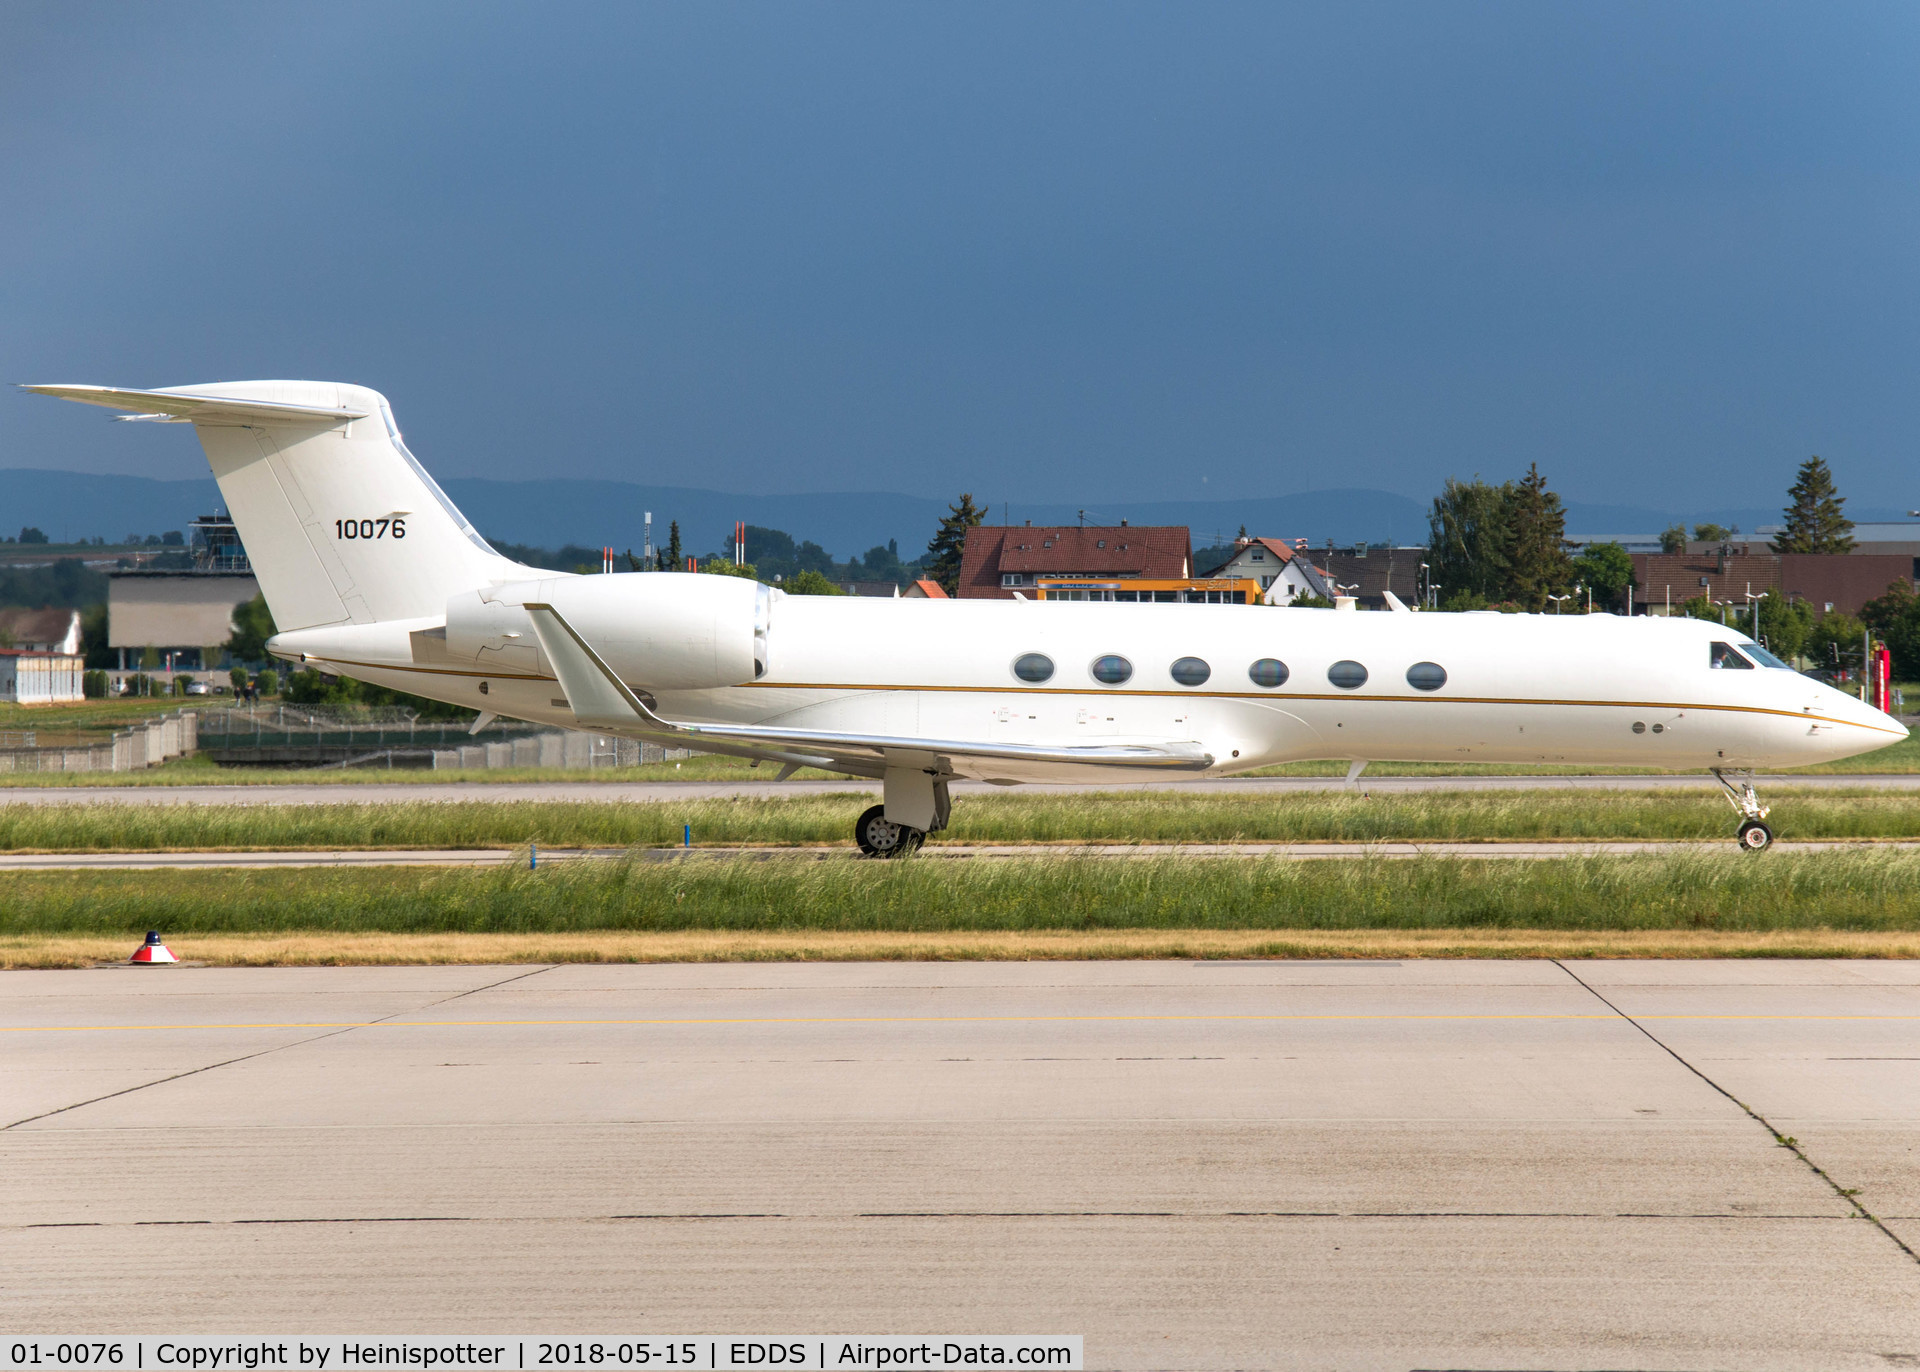 01-0076, 2001 Gulfstream Aerospace C-37A (Gulfstream V) C/N 645, 01-0076 (SPAR70) at Stuttgart Airport.